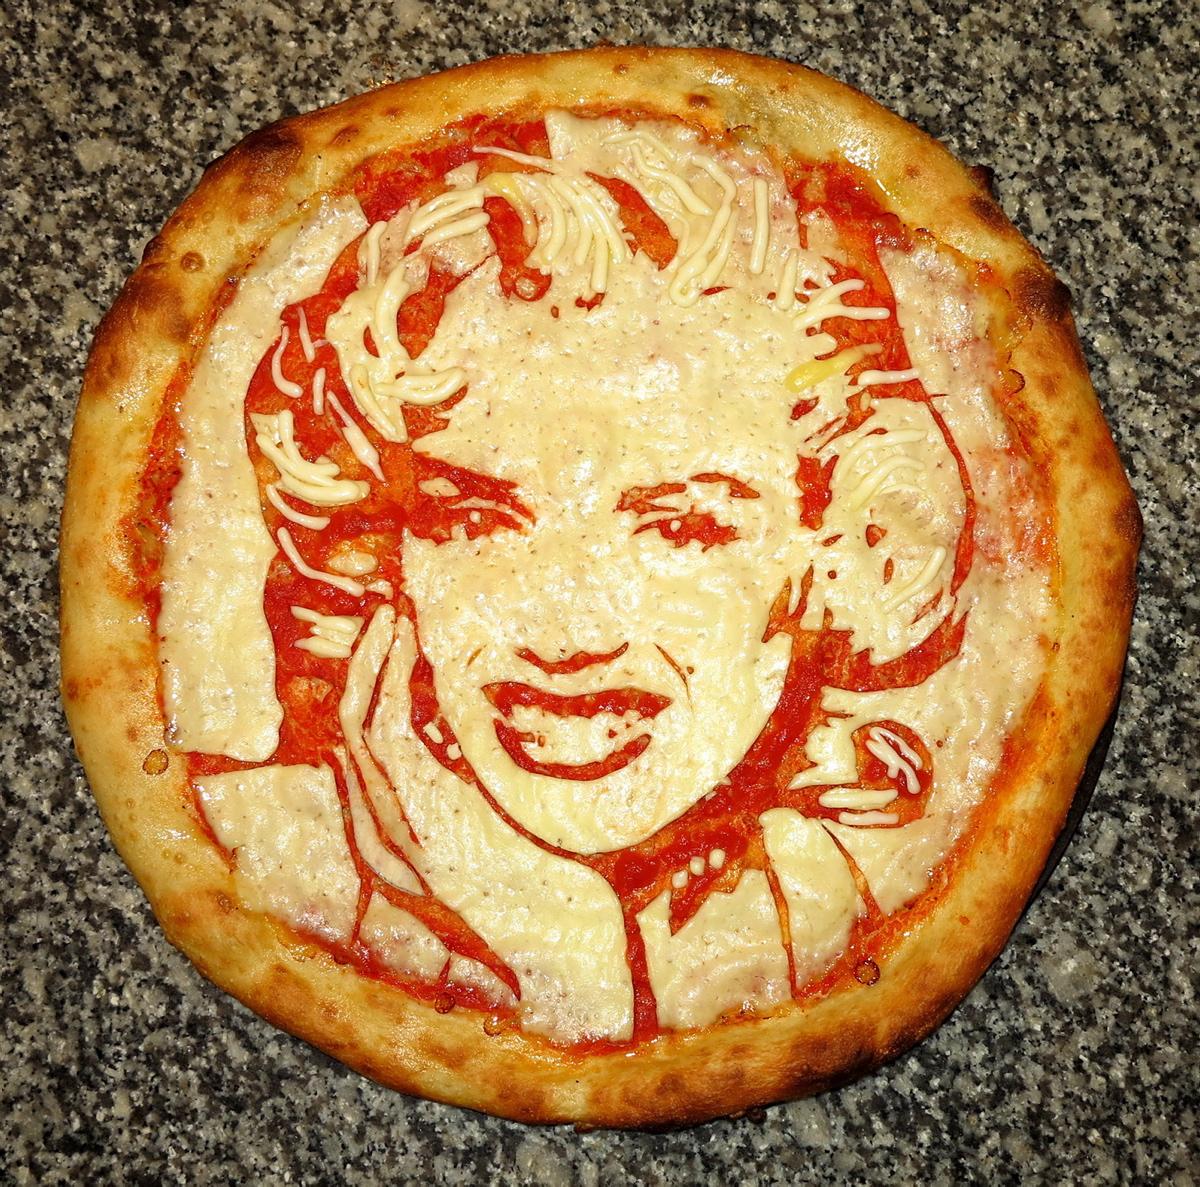 chef conquista instagram con retratos en pizzas marilyn monroe pizza portrait